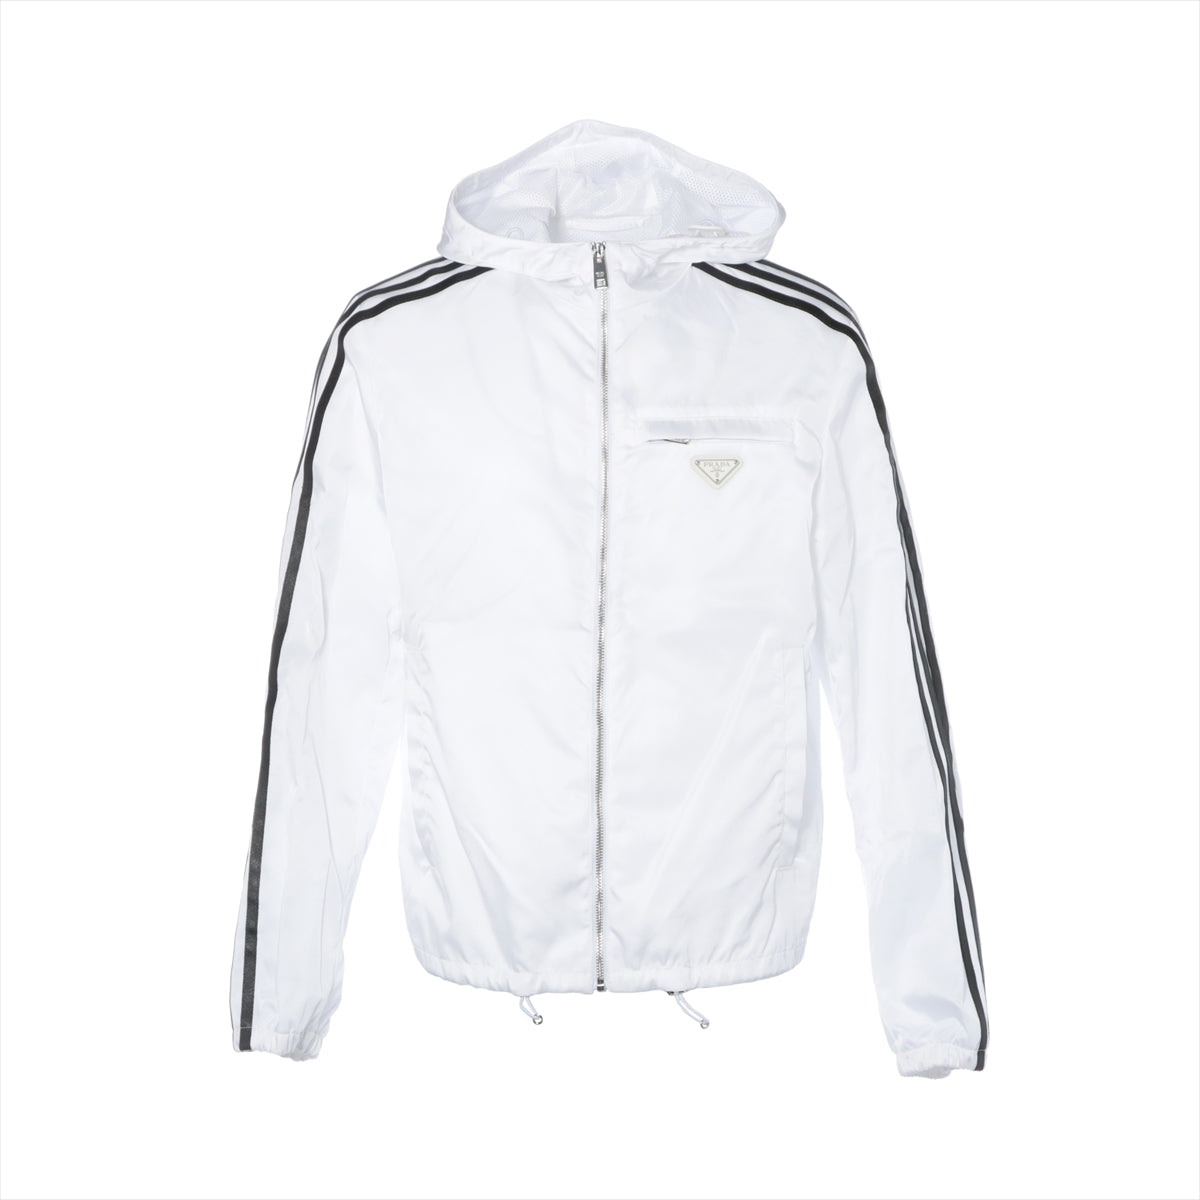 Prada x Adidas Re Nylon Re Nylon 21AW Nylon track jacket 46 Men's White  SGB964